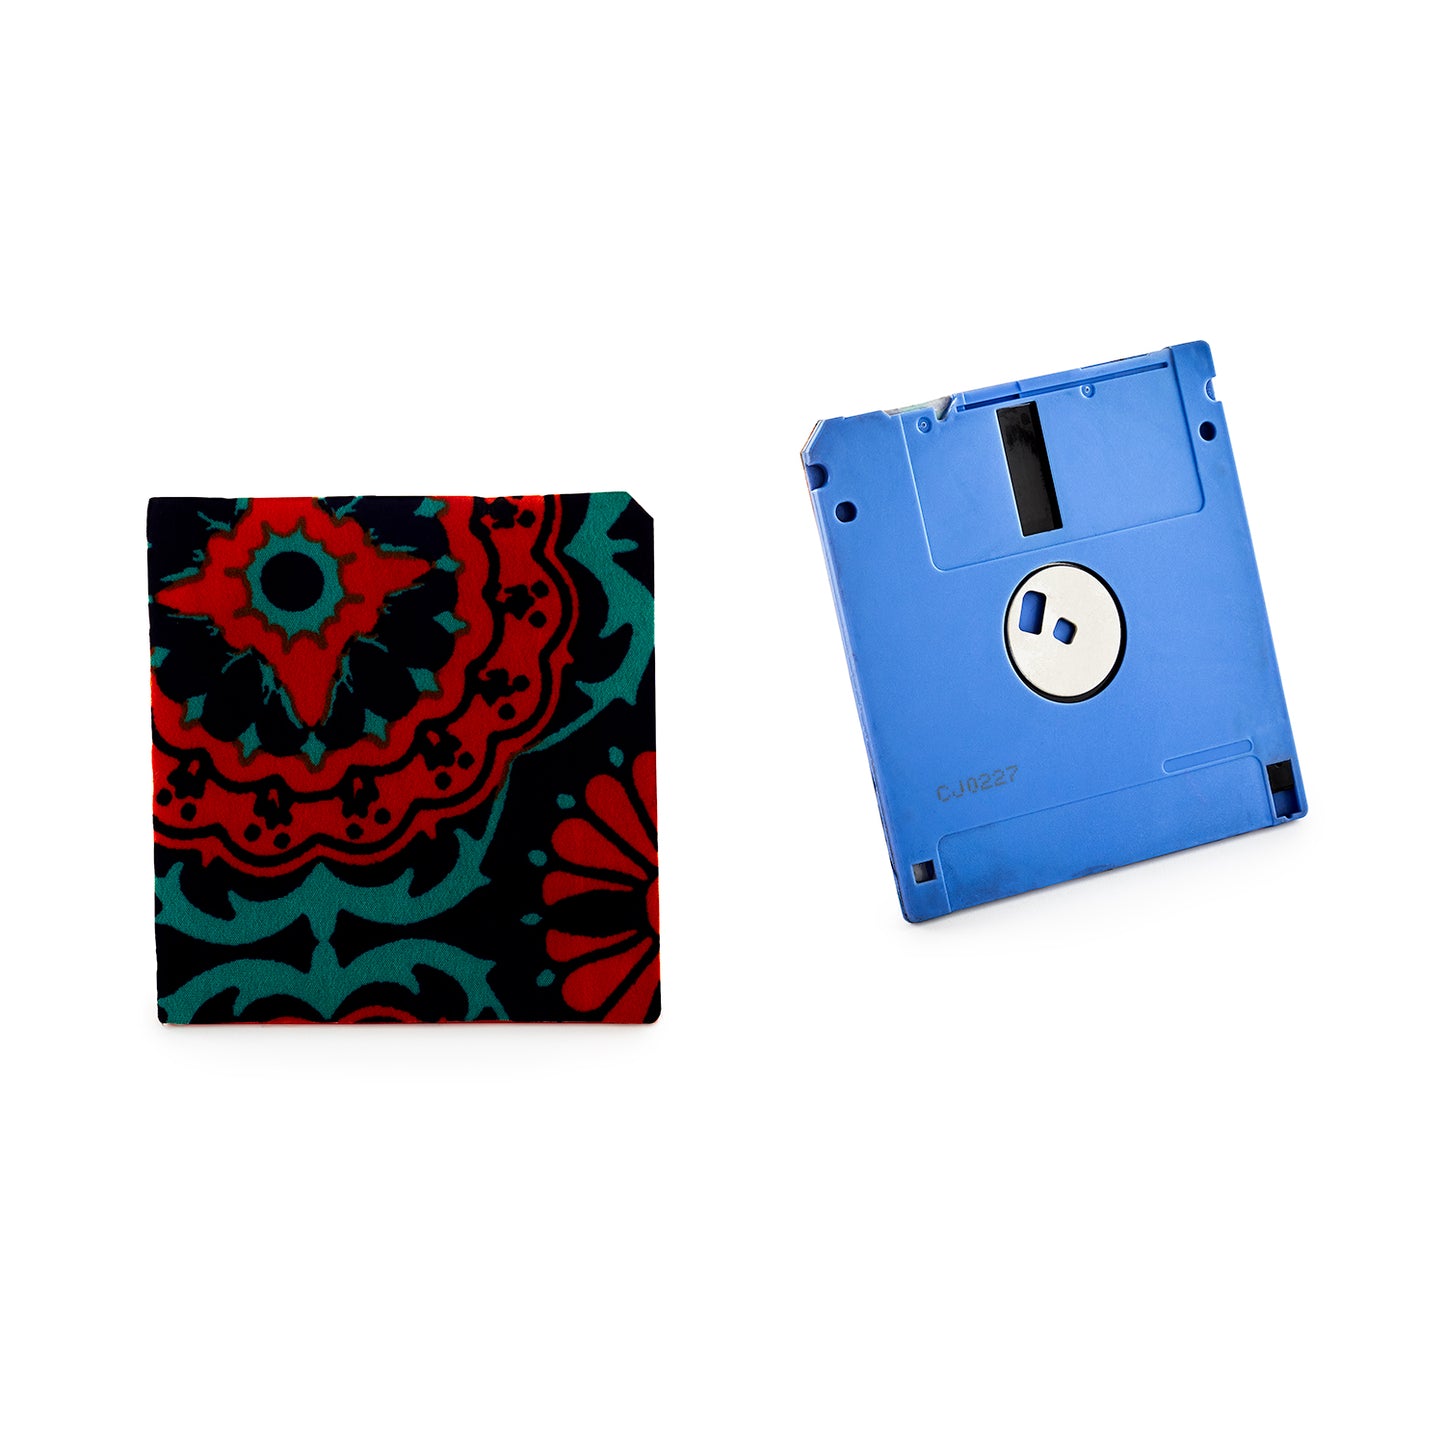 Jet Black - Floppy Disk Coaster Set of 2